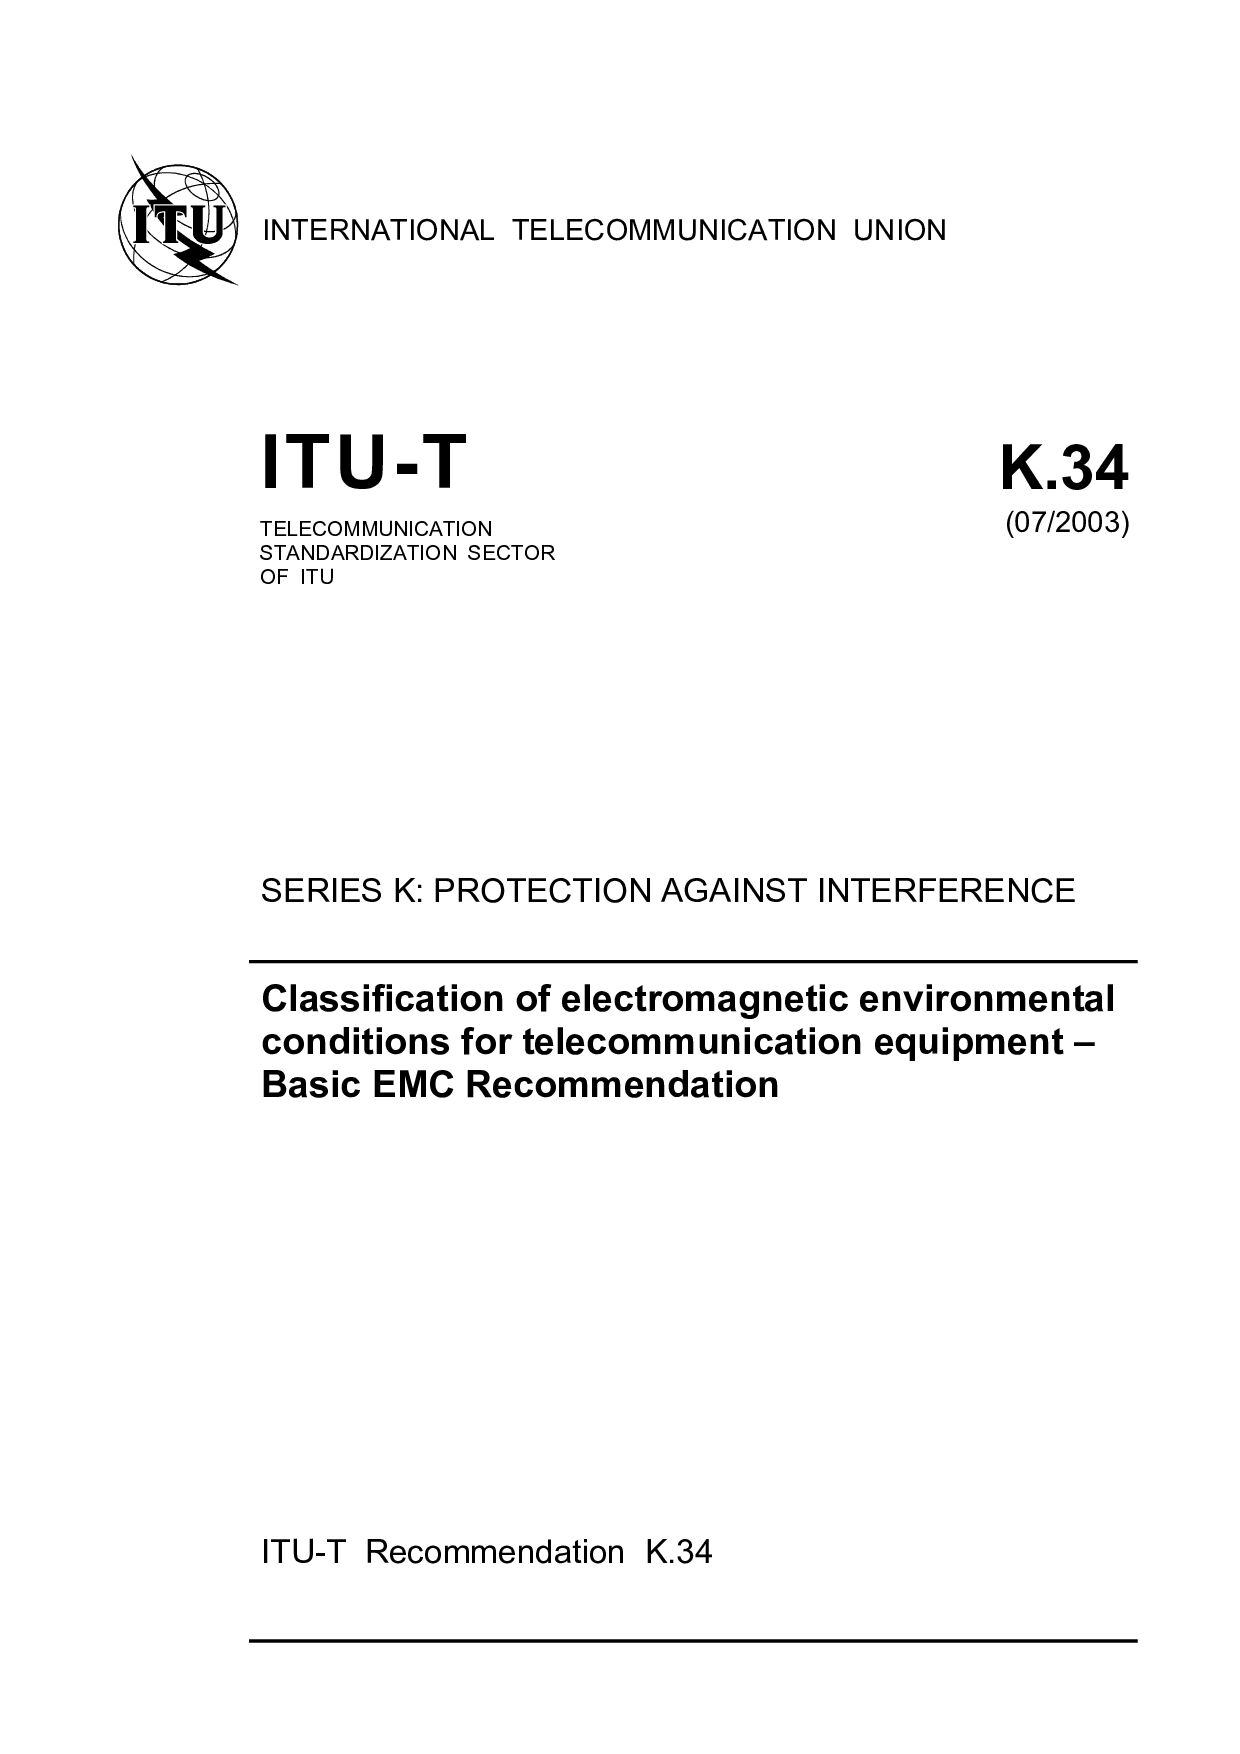 ITU-T K.34-2003